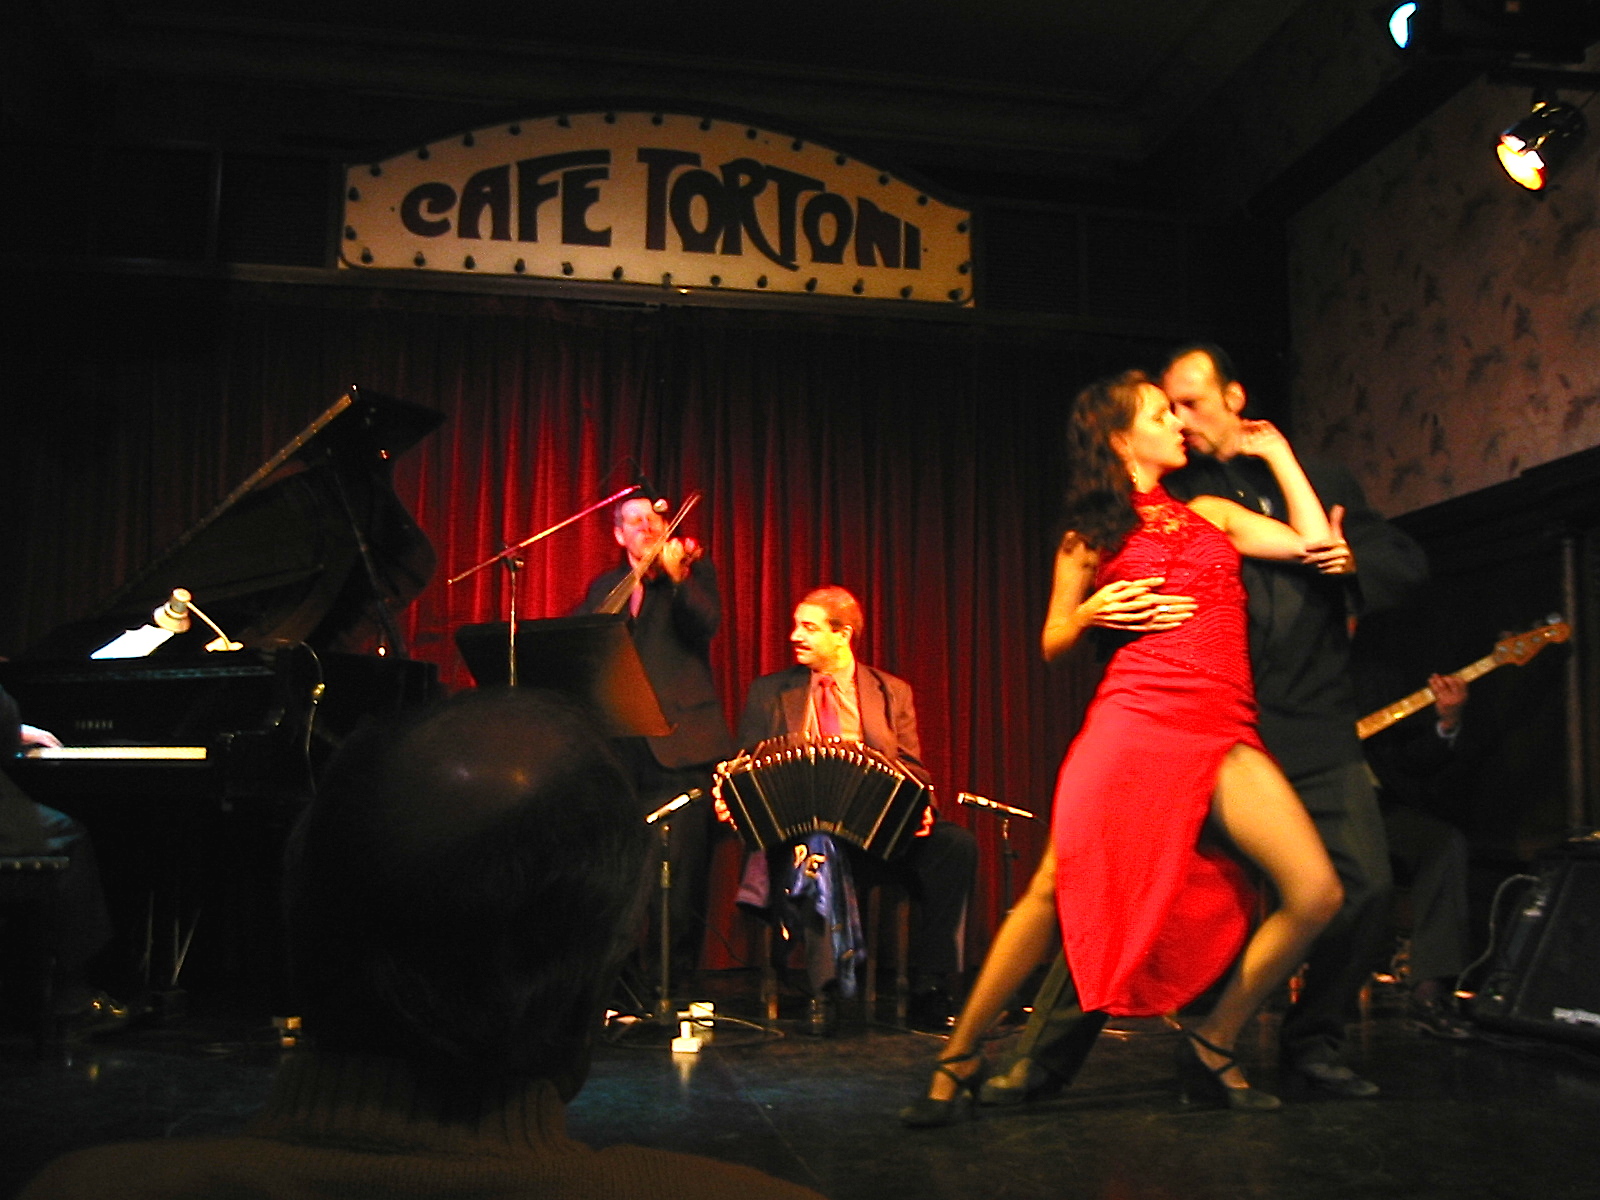 O famoso Café Tortoni, com o tango argentino na sua essência!